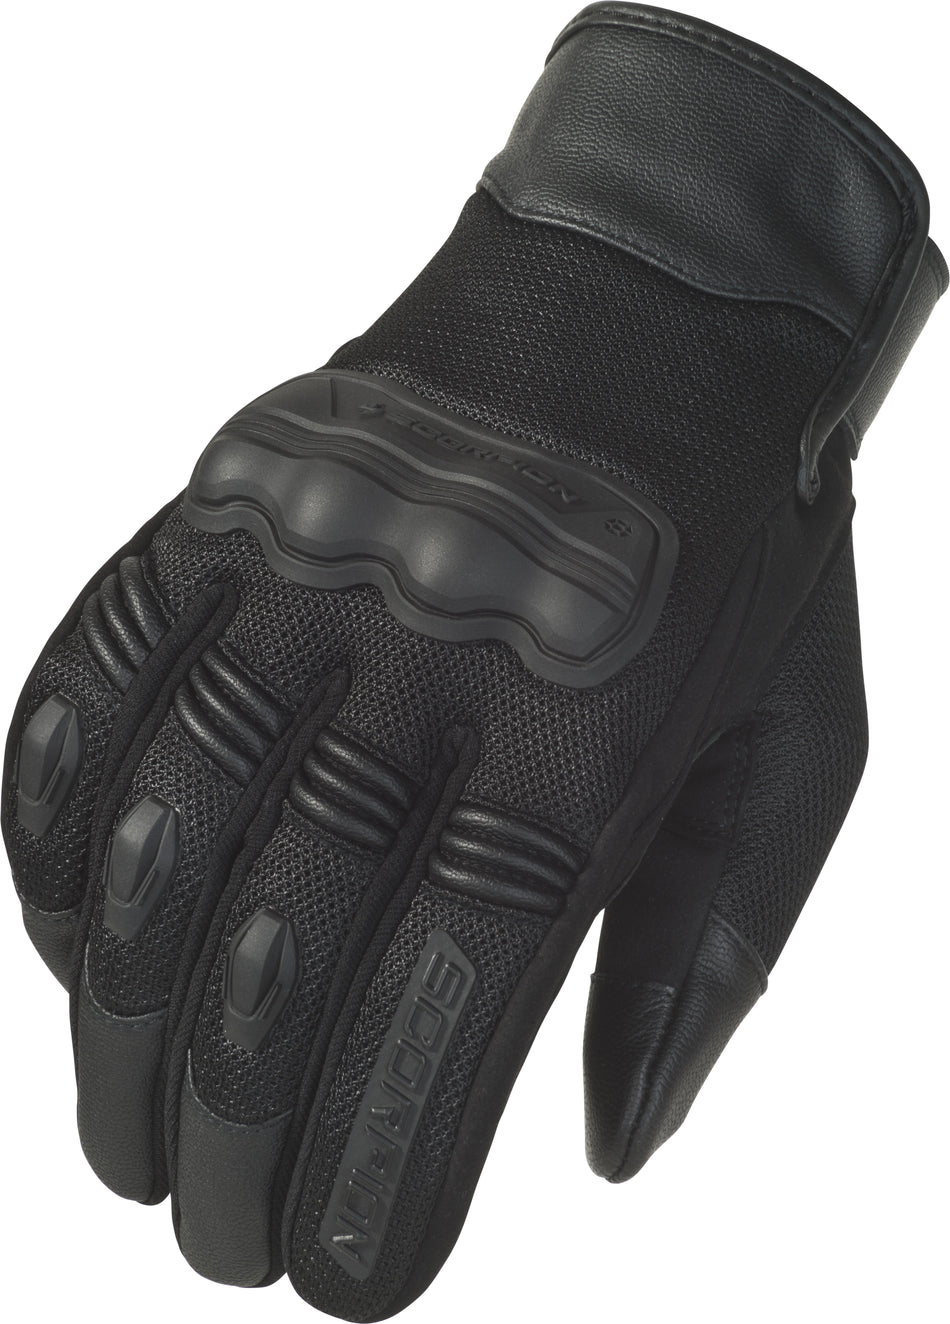 SCORPION EXO Divergent Gloves Black 2x G33-037